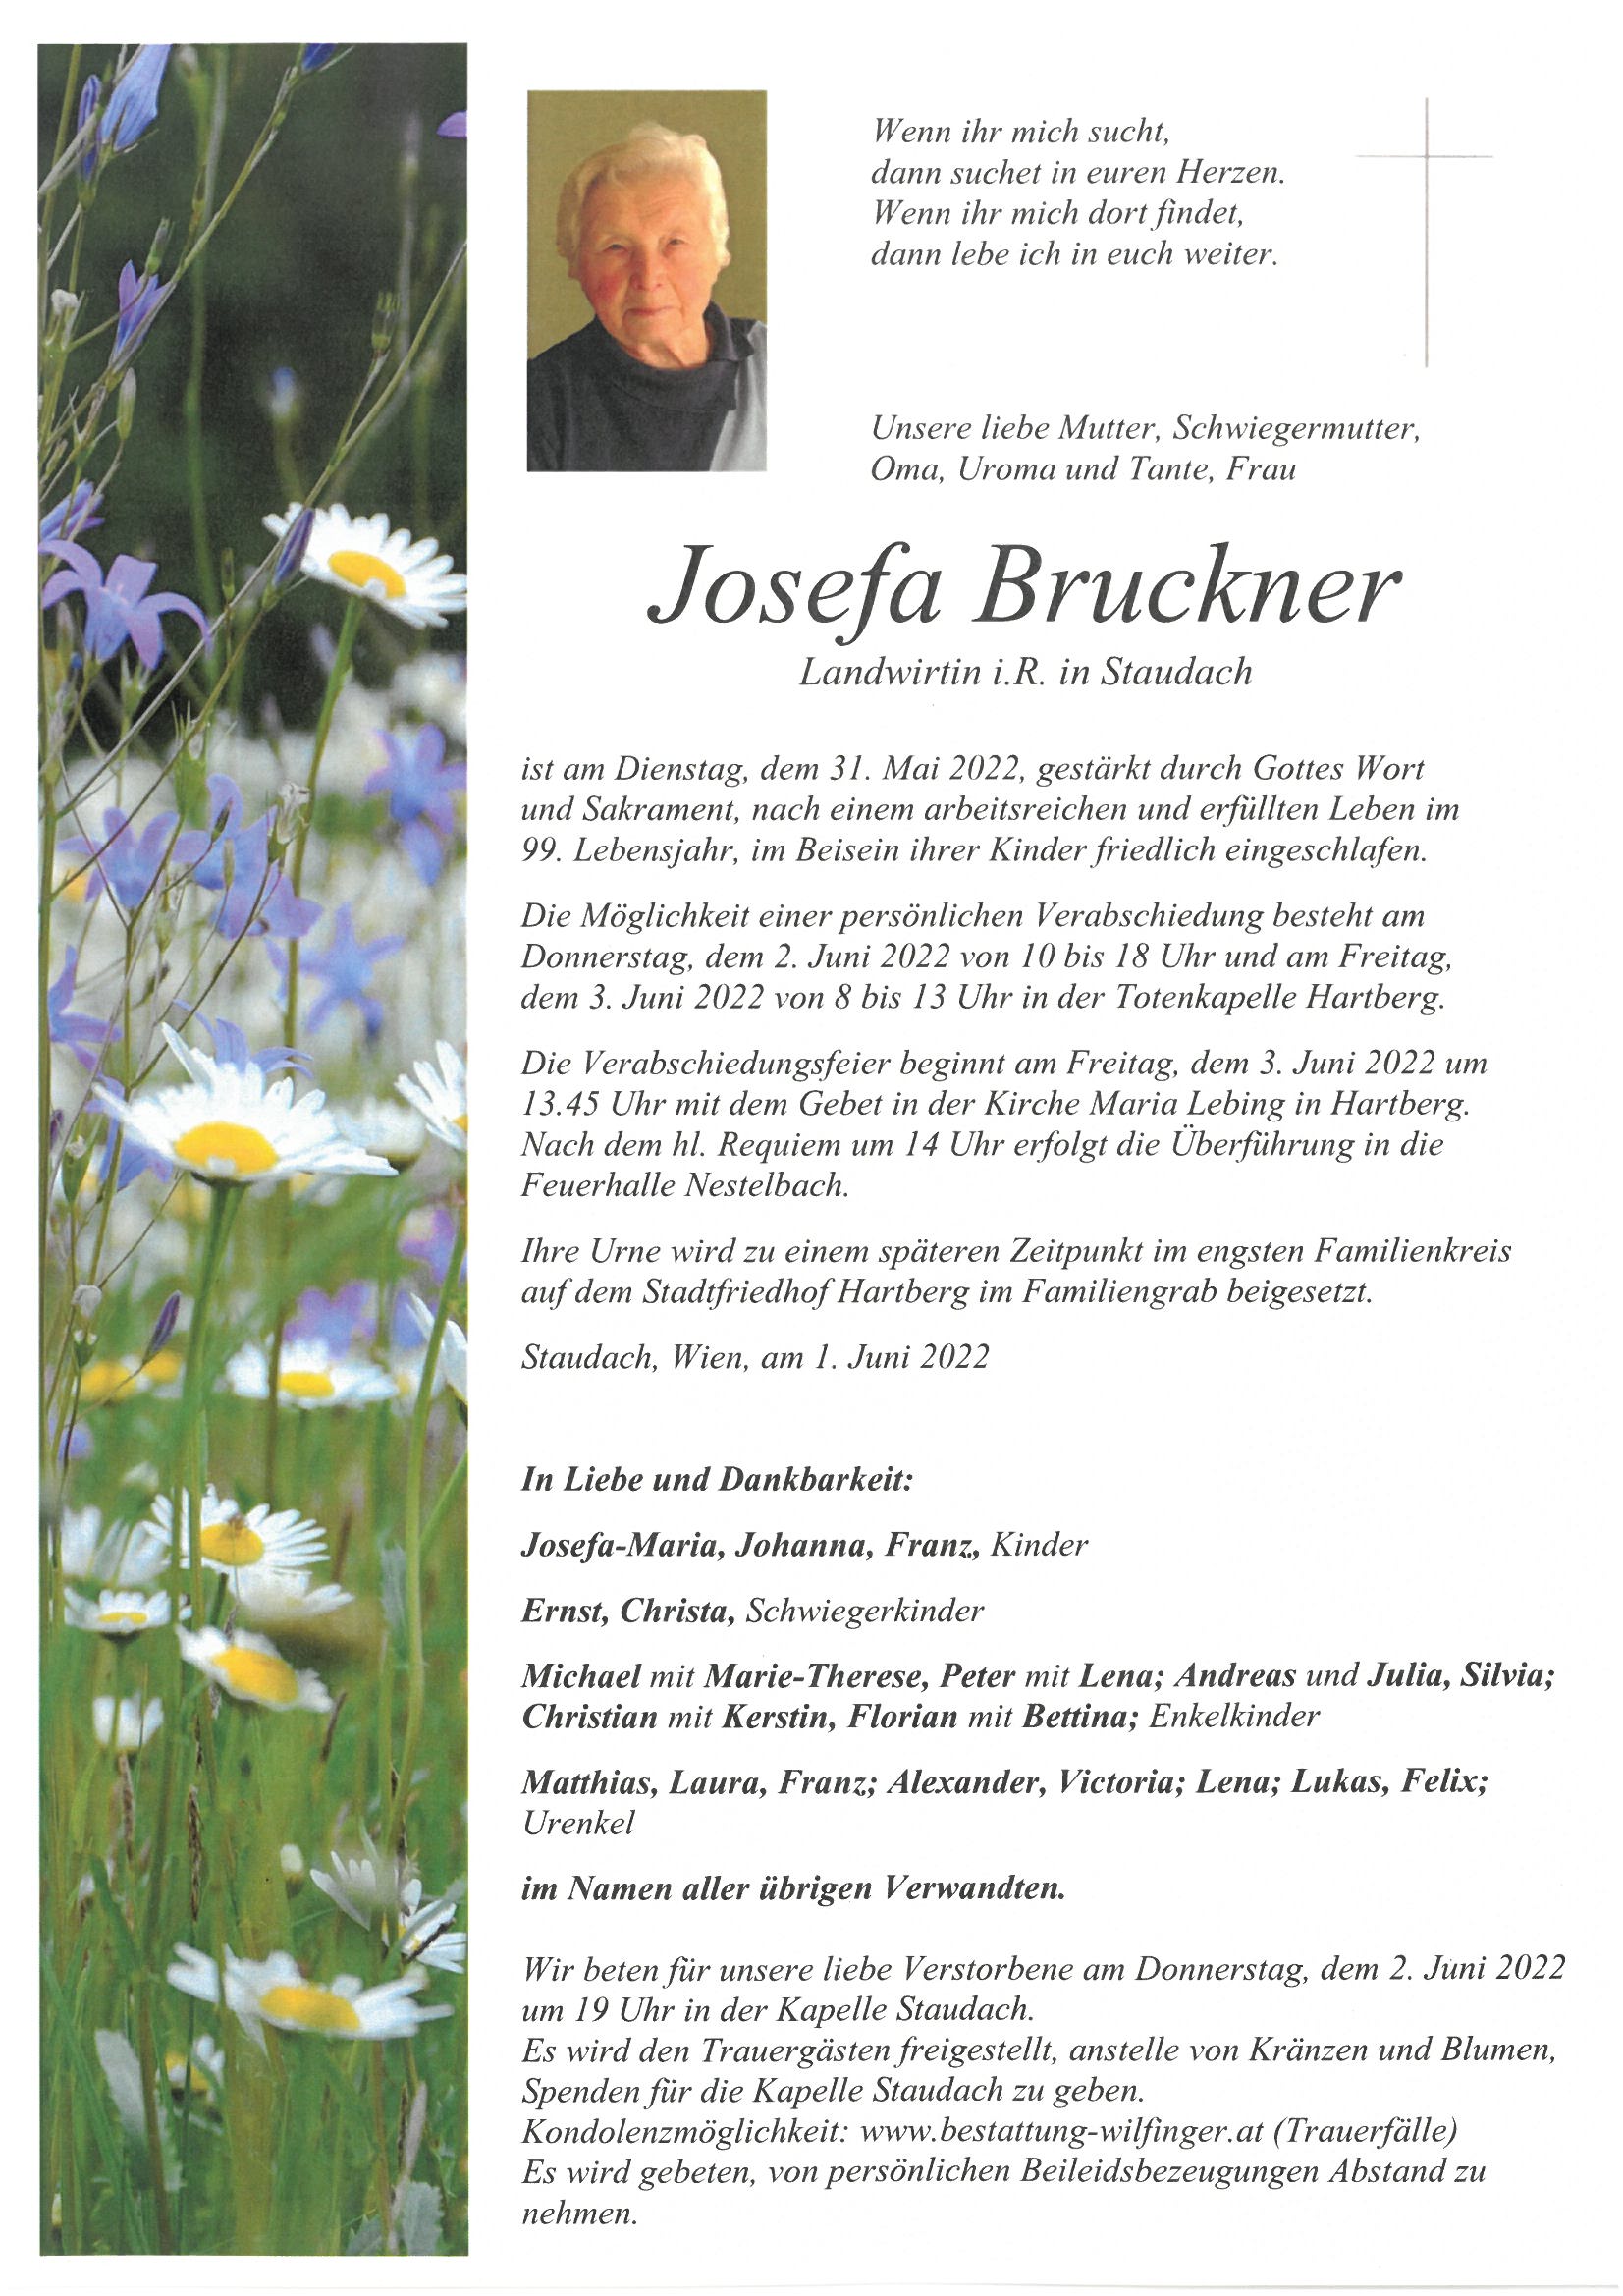 Josefa Bruckner, Staudach